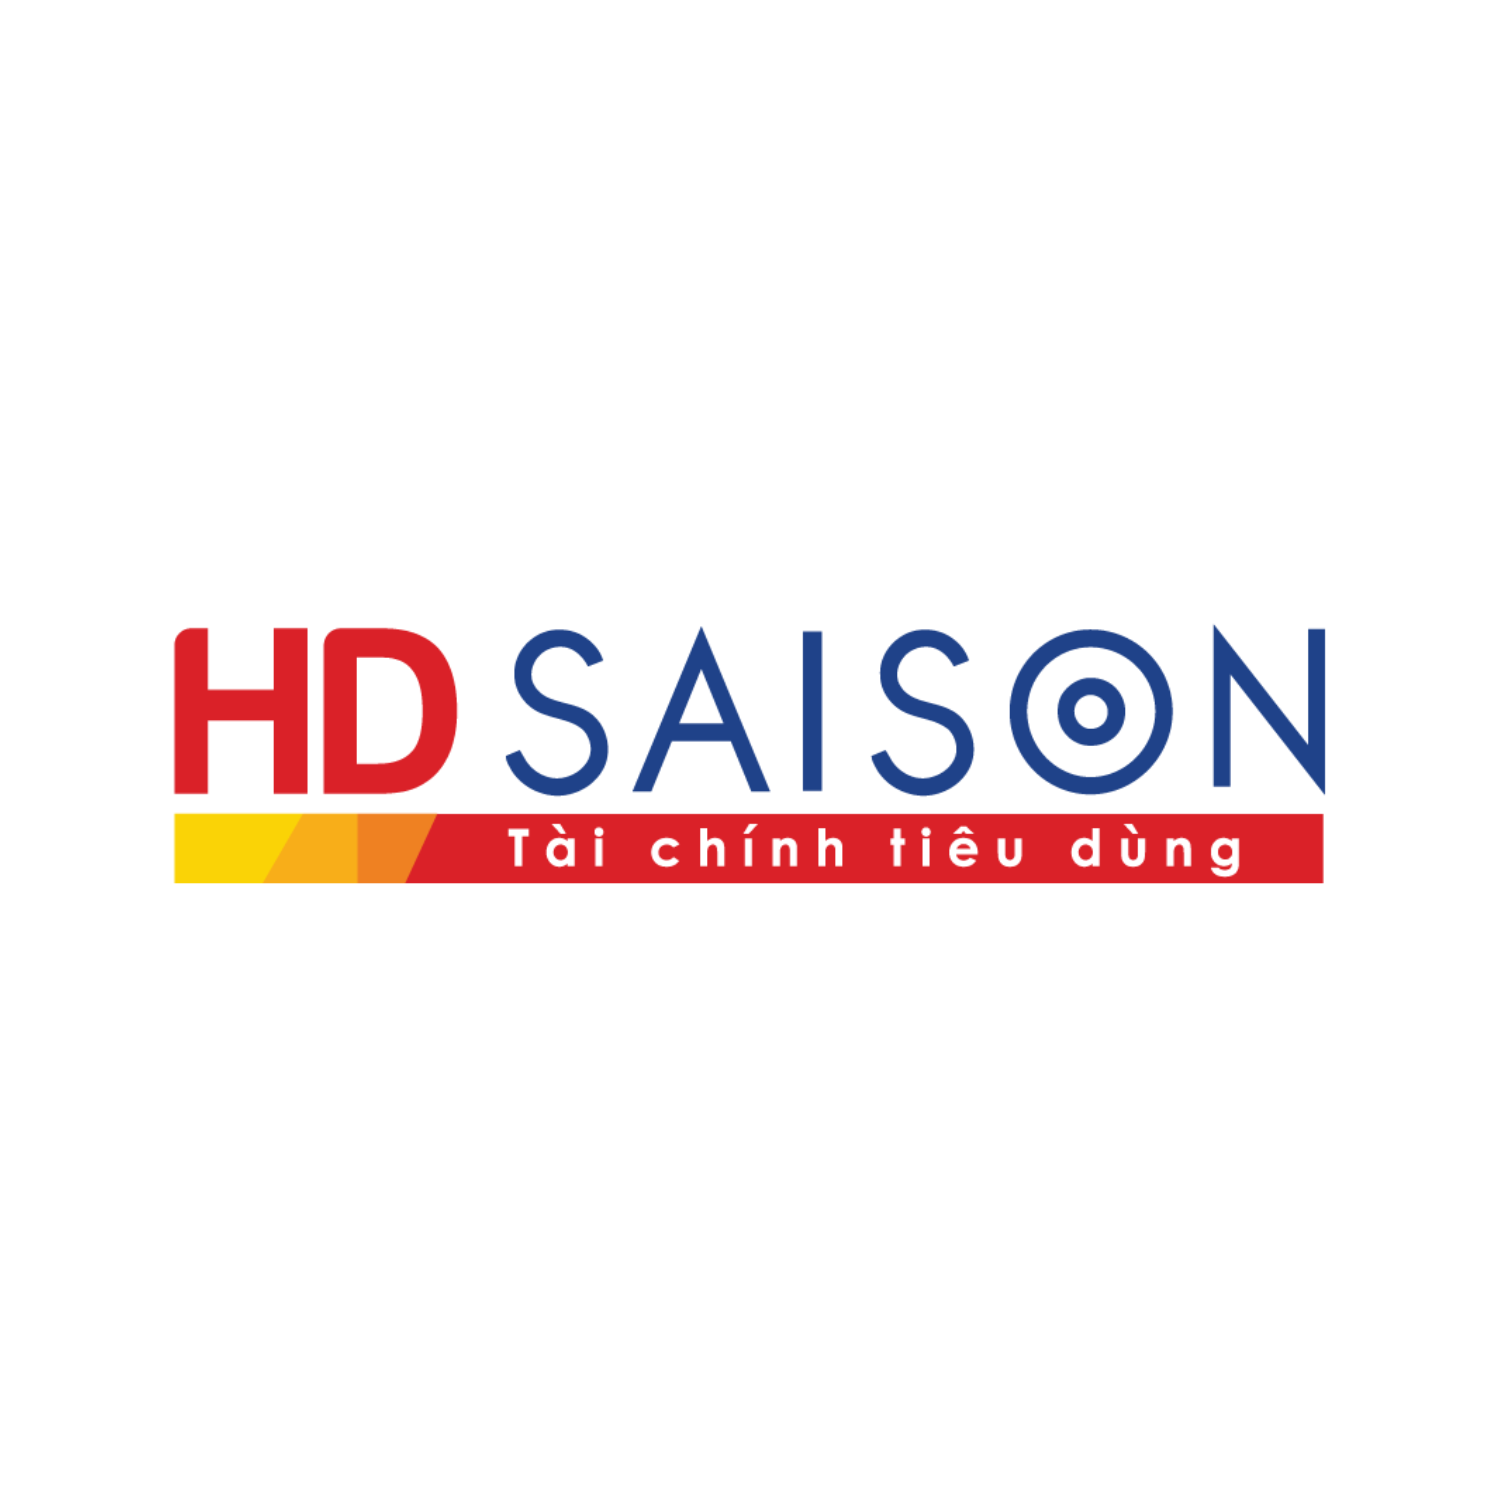 Công ty tài chính TNHH HD SAISON logo